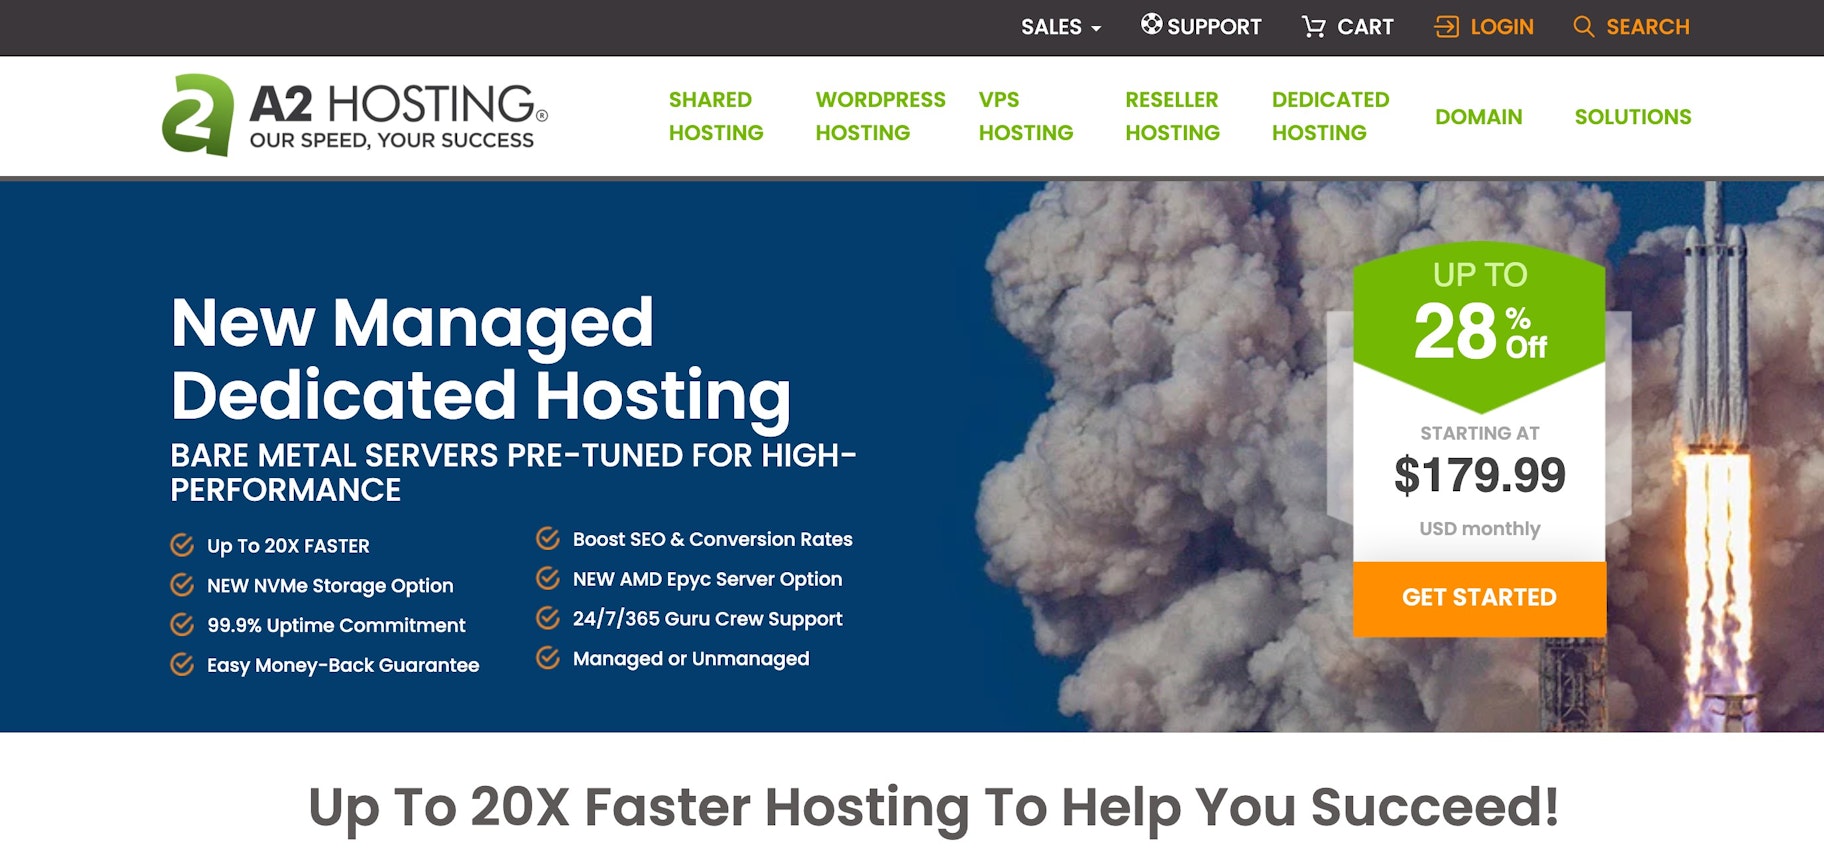 fast website hosting solution: A2 Hosting